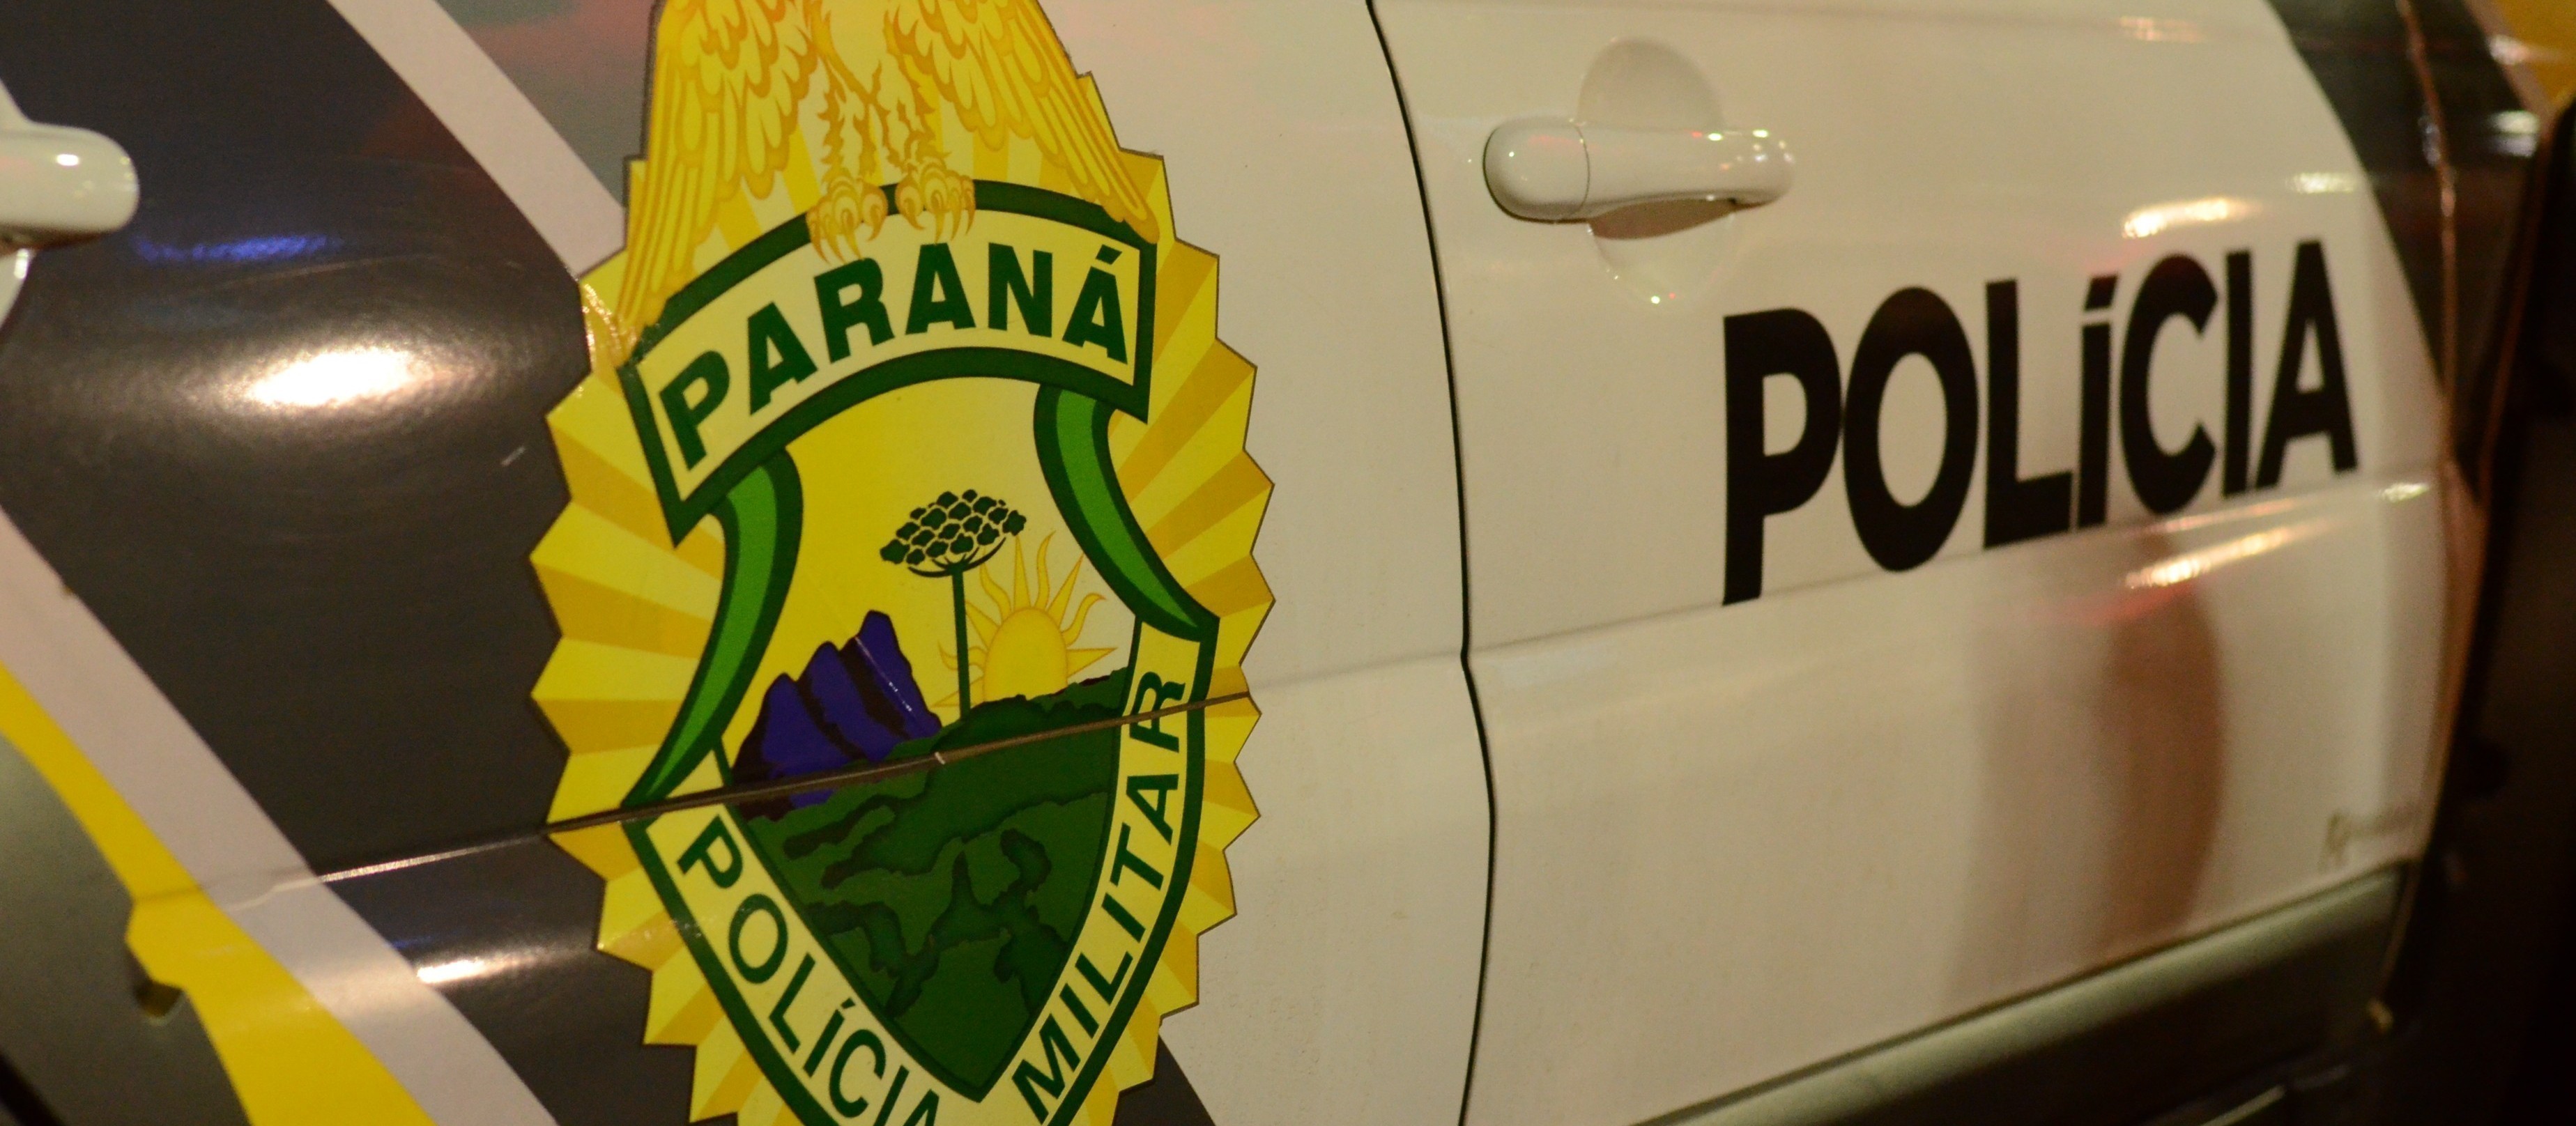 Moradora denuncia à polícia furto de botijão de gás, em Umuarama